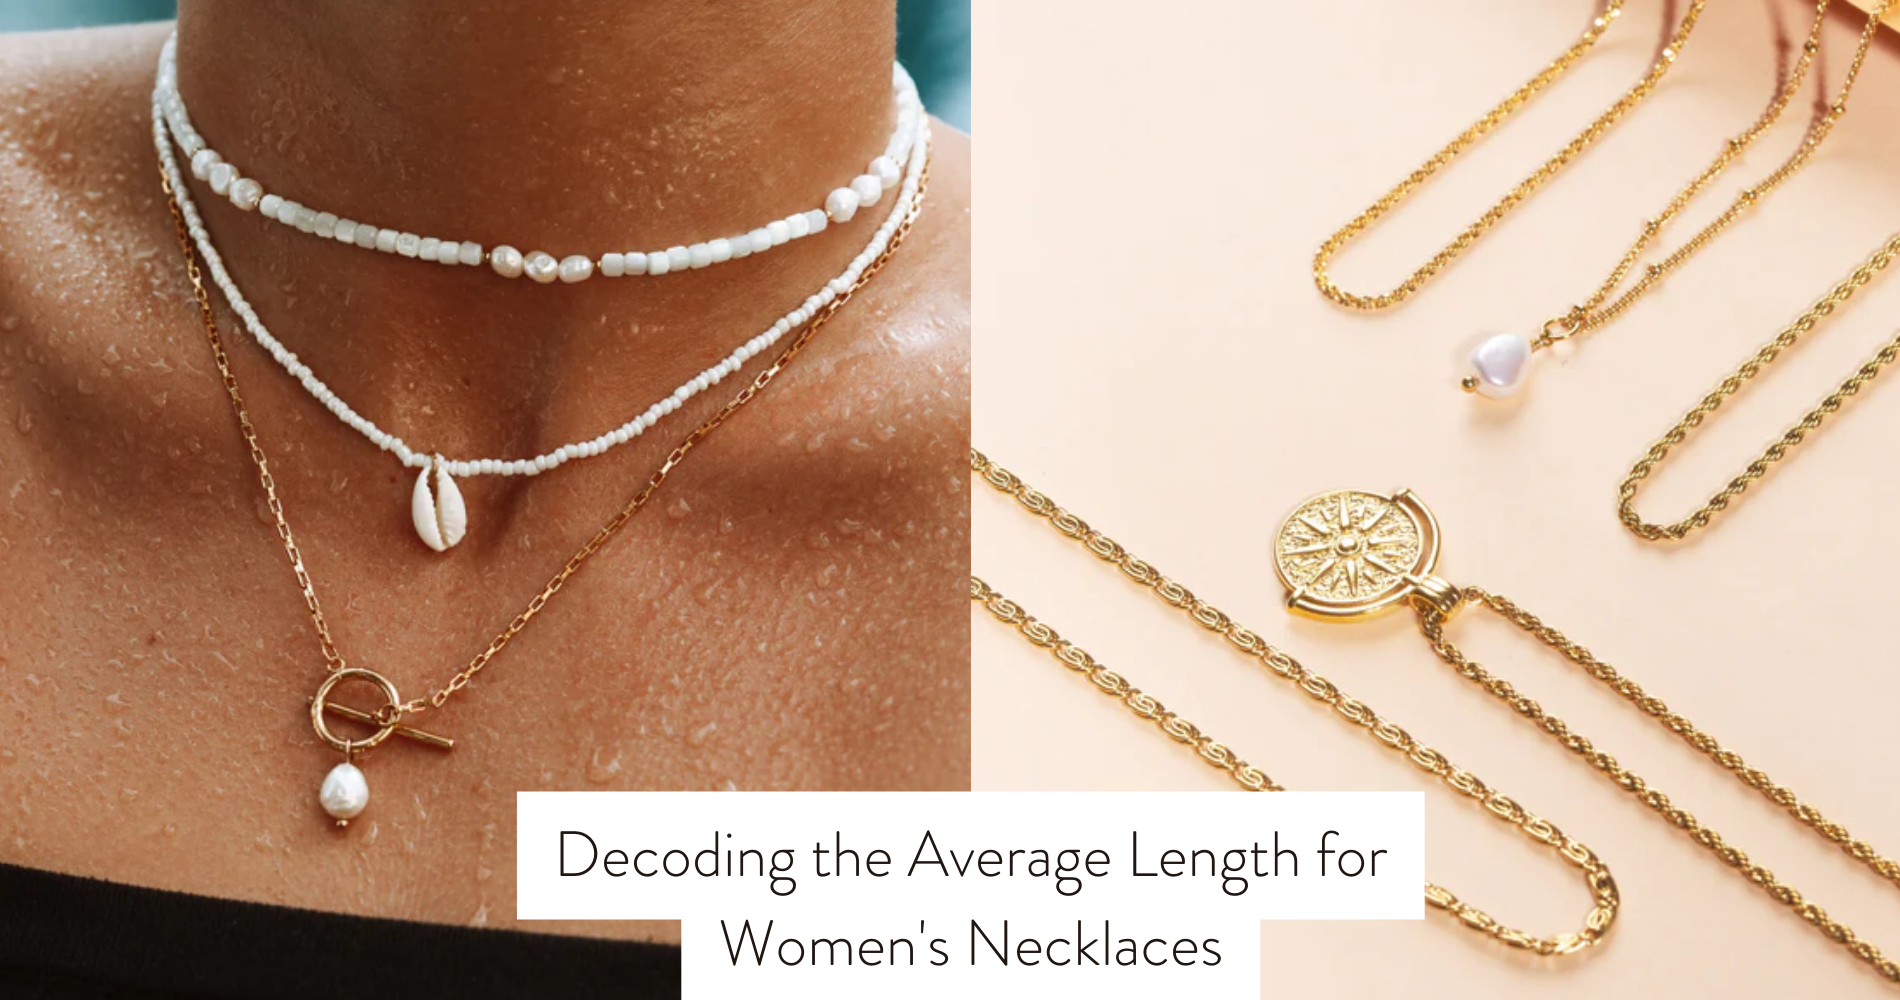 Women's necklaces